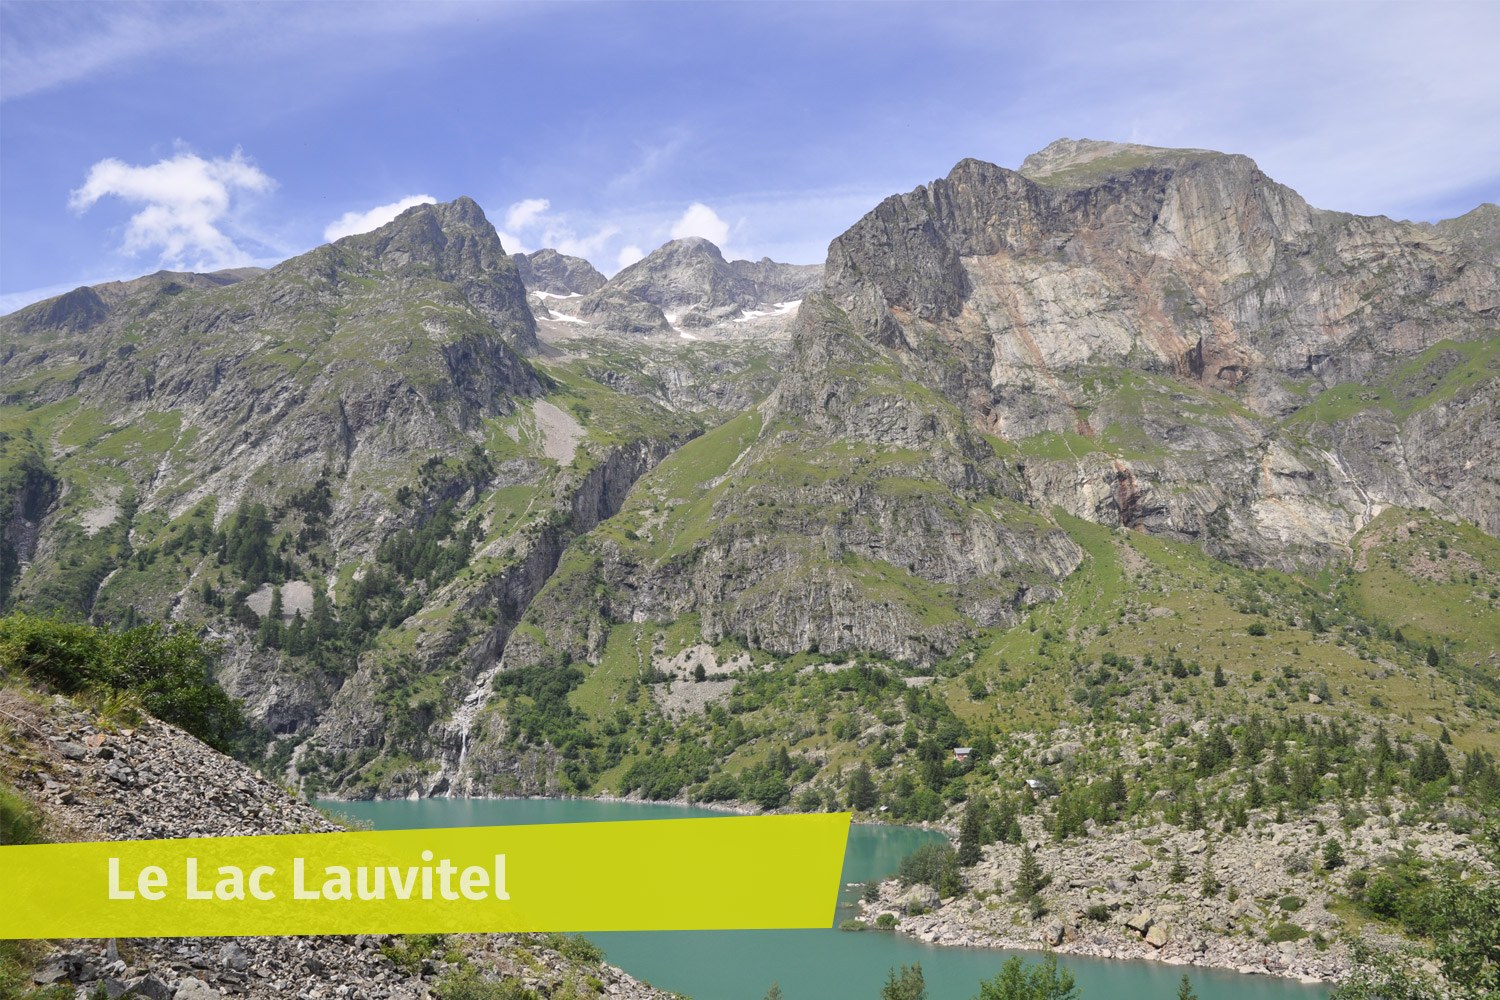 Le Lac Lauvitel